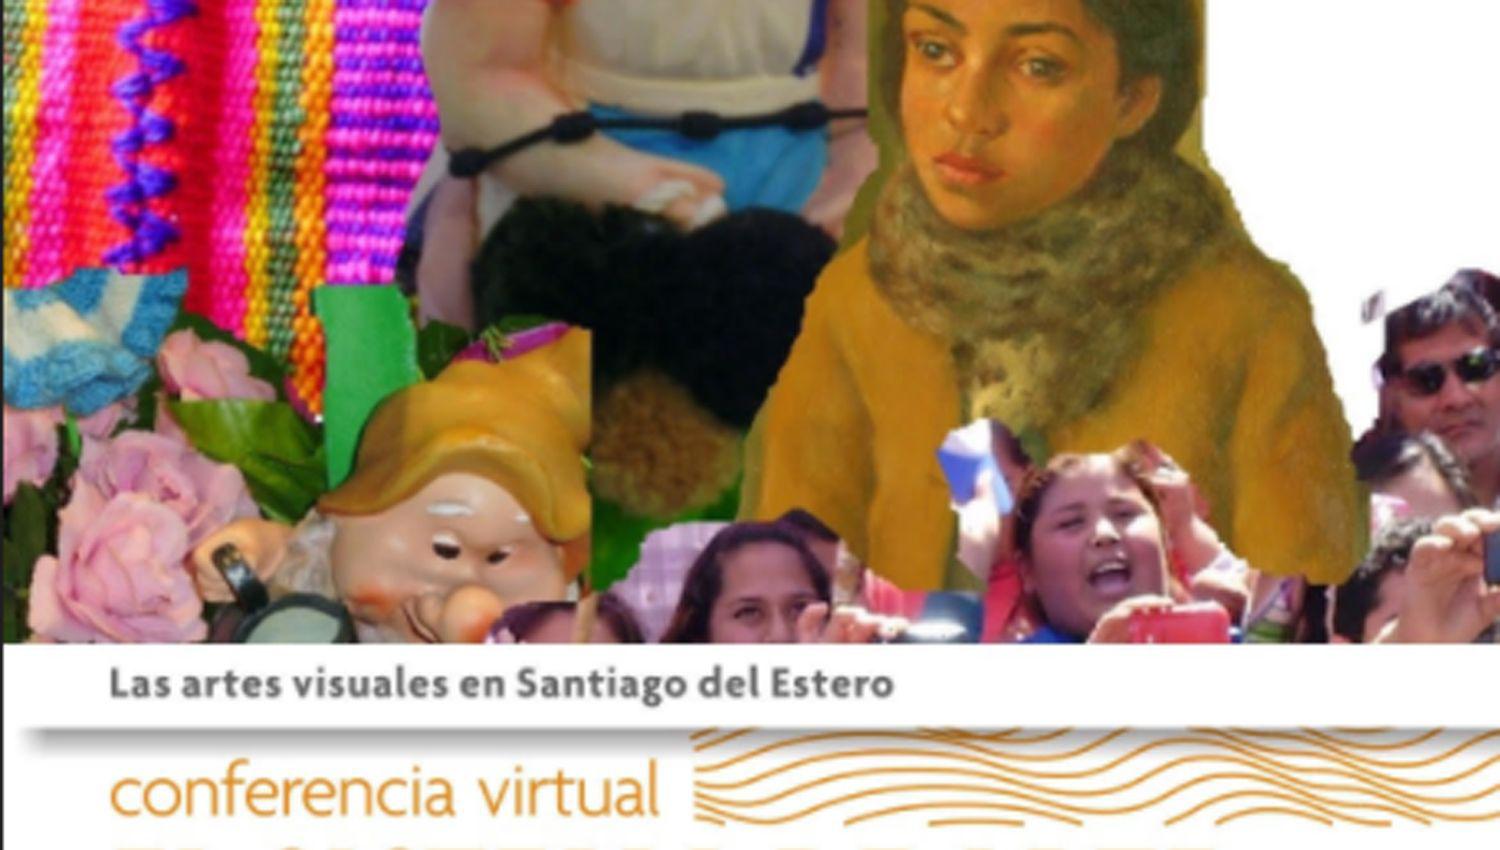 Centro Cultural del Bicentenario- ldquoLas artes visuales en Santiago del Esterordquo